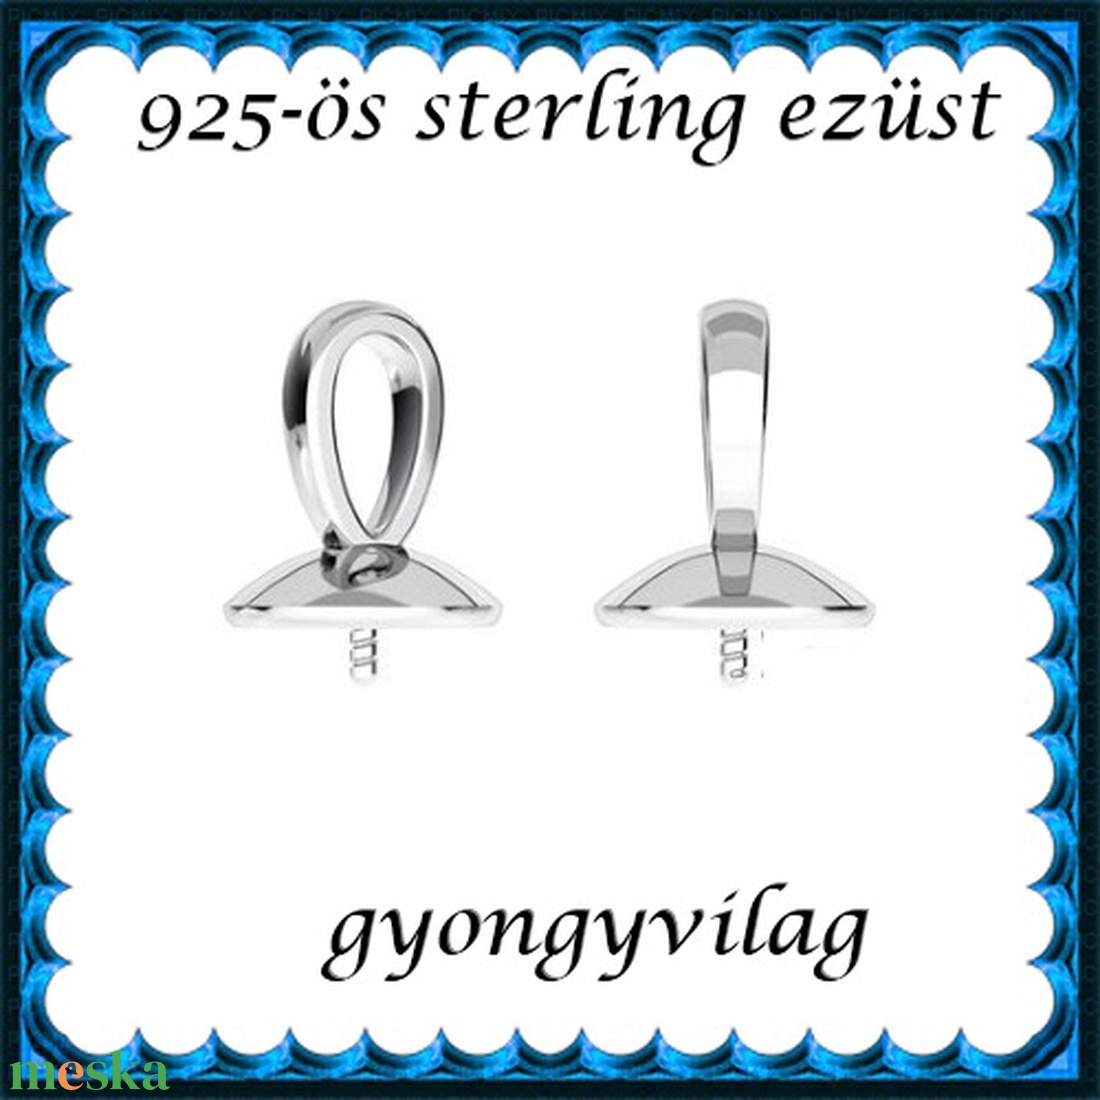 925-ös sterling ezüst ékszerkellék: medálkapocs EMK 68  - gyöngy, ékszerkellék - egyéb alkatrész - Meska.hu